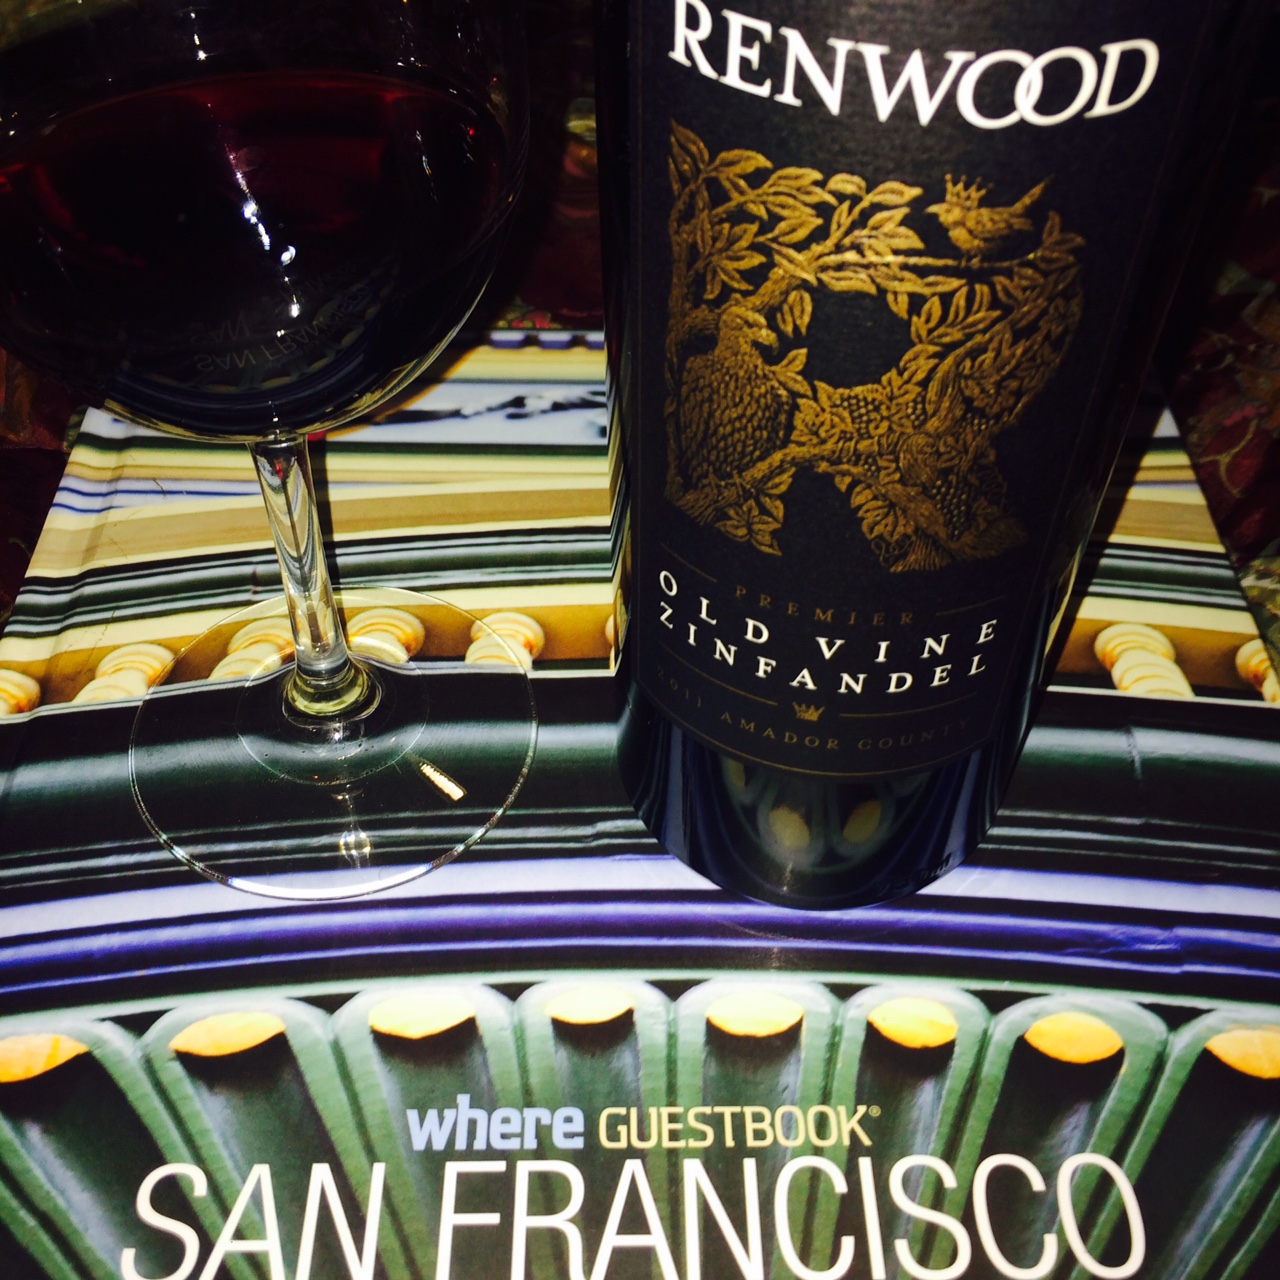 Renwood Old Vine - Feito realmente com vinhas velhas